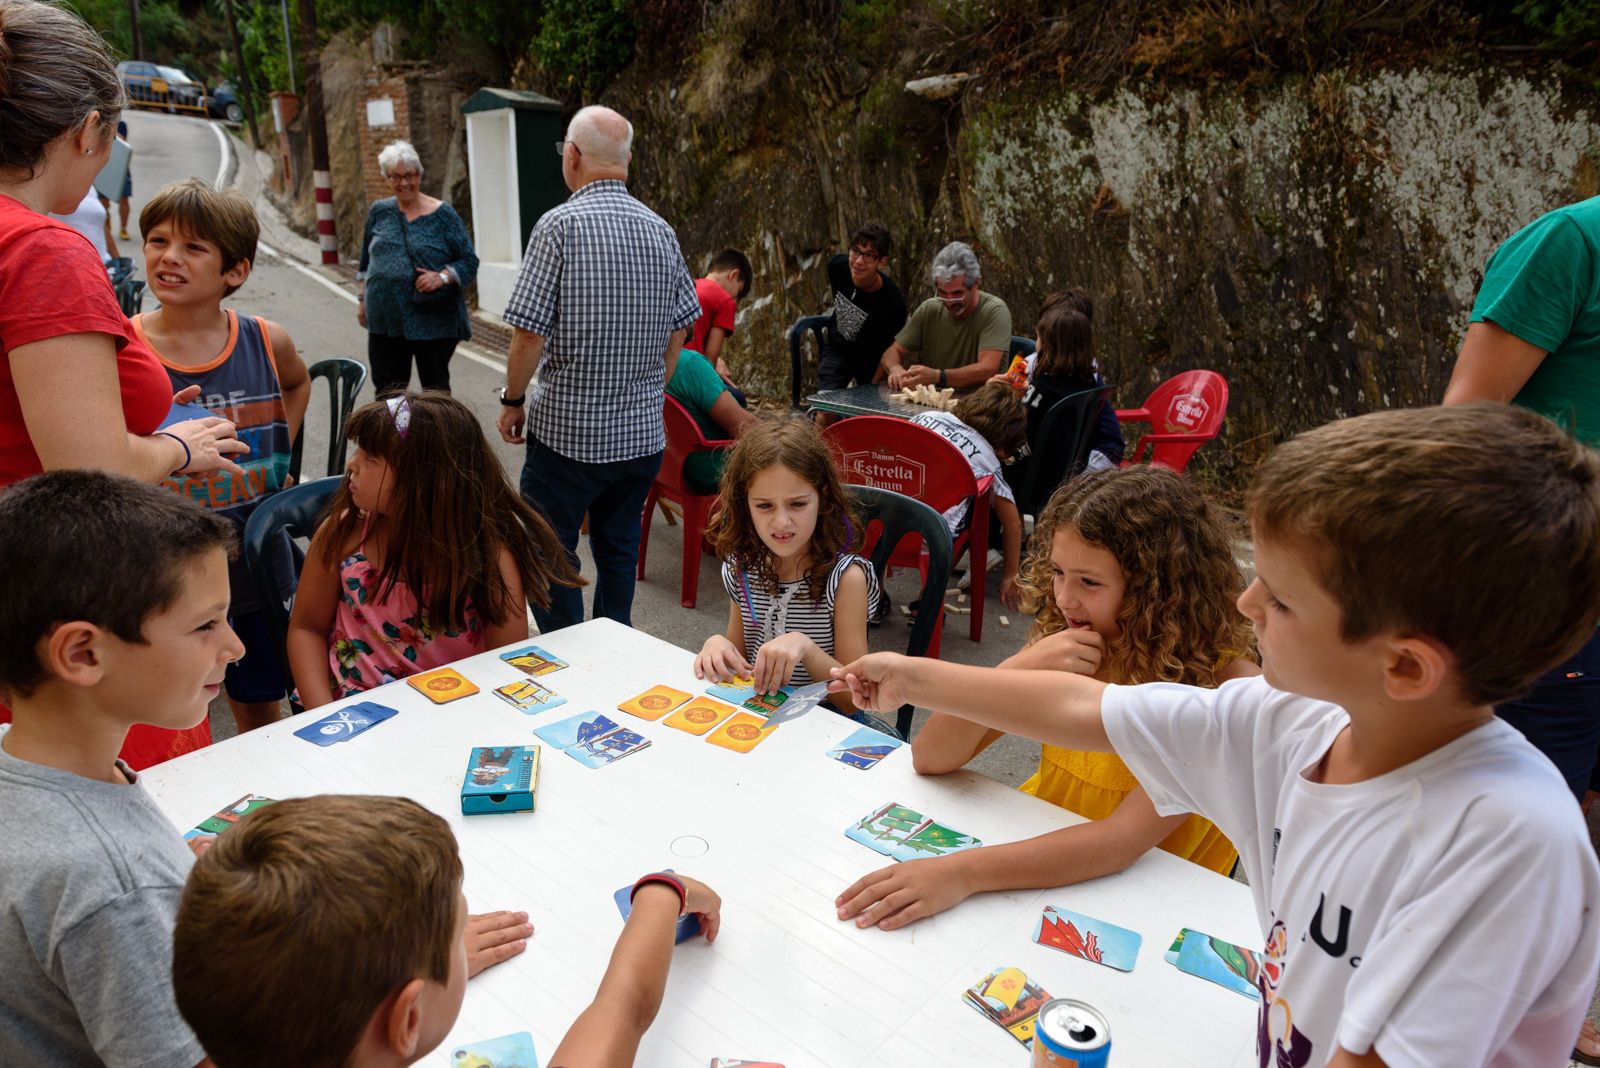 Festa infantil: Diferents jocs i xocolatada amb pastes. Foto: Miguel López Mallach